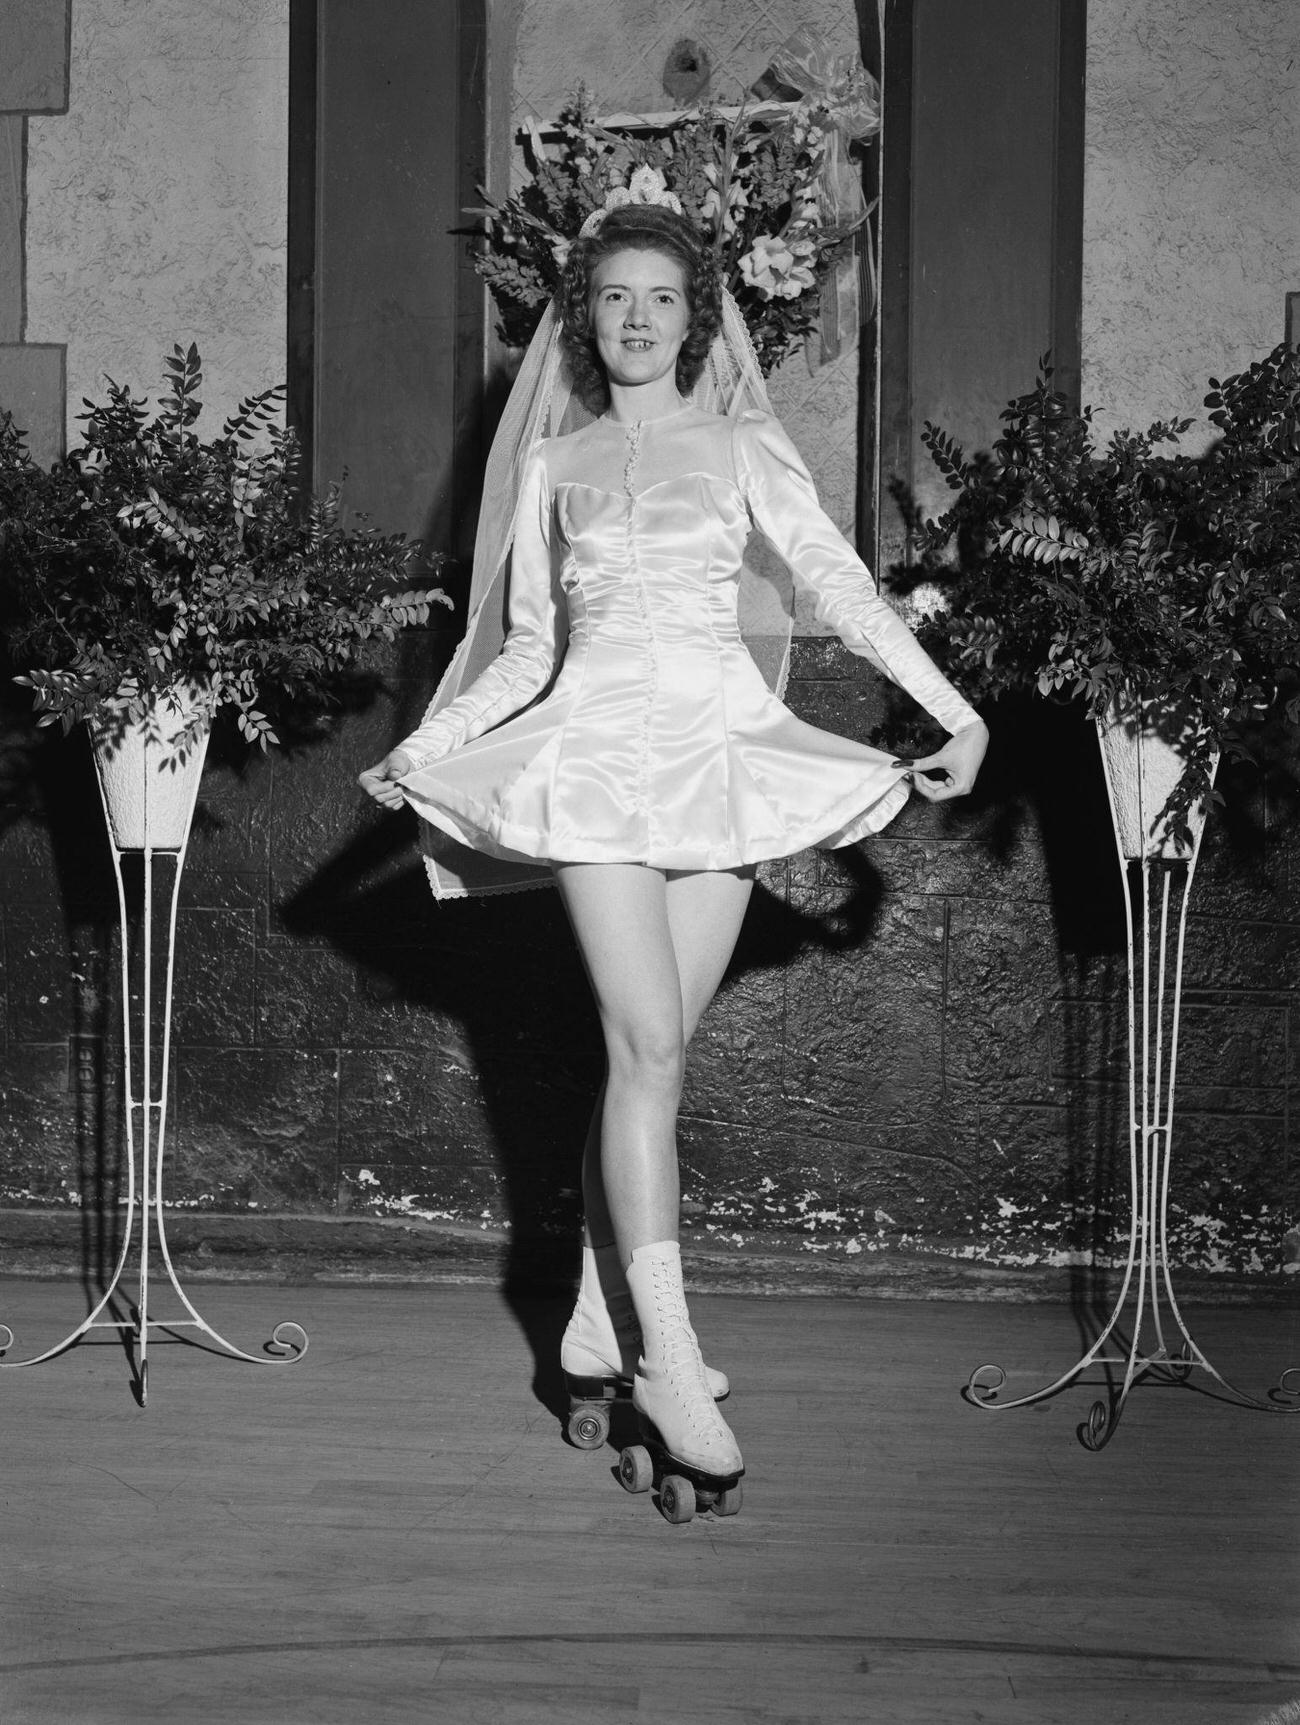 Bride Wearing Roller Skates at Her Wedding, USA, circa 1950